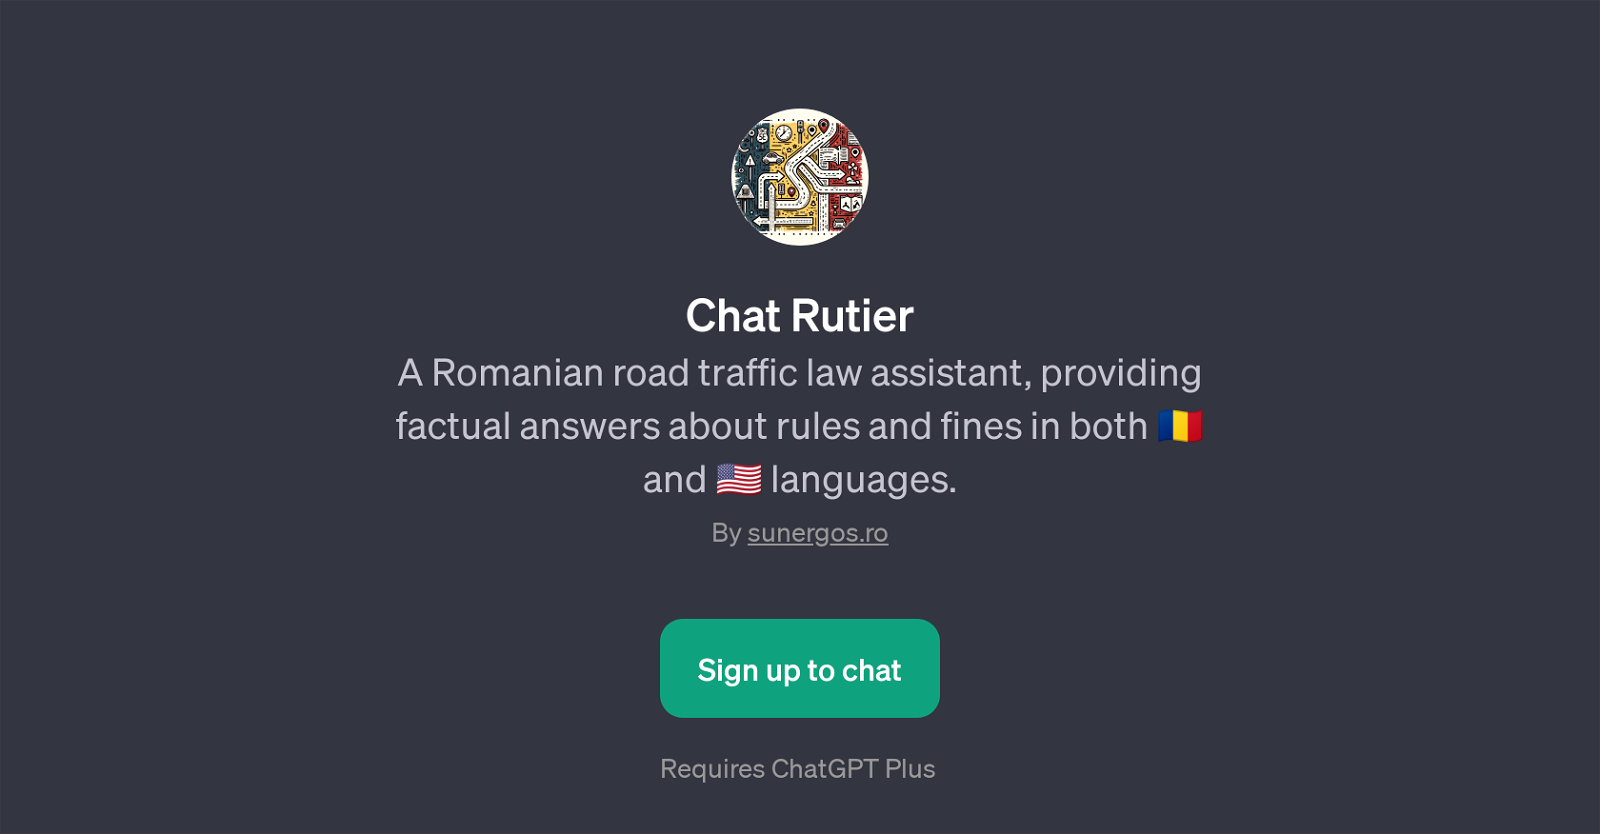 Chat Rutier website